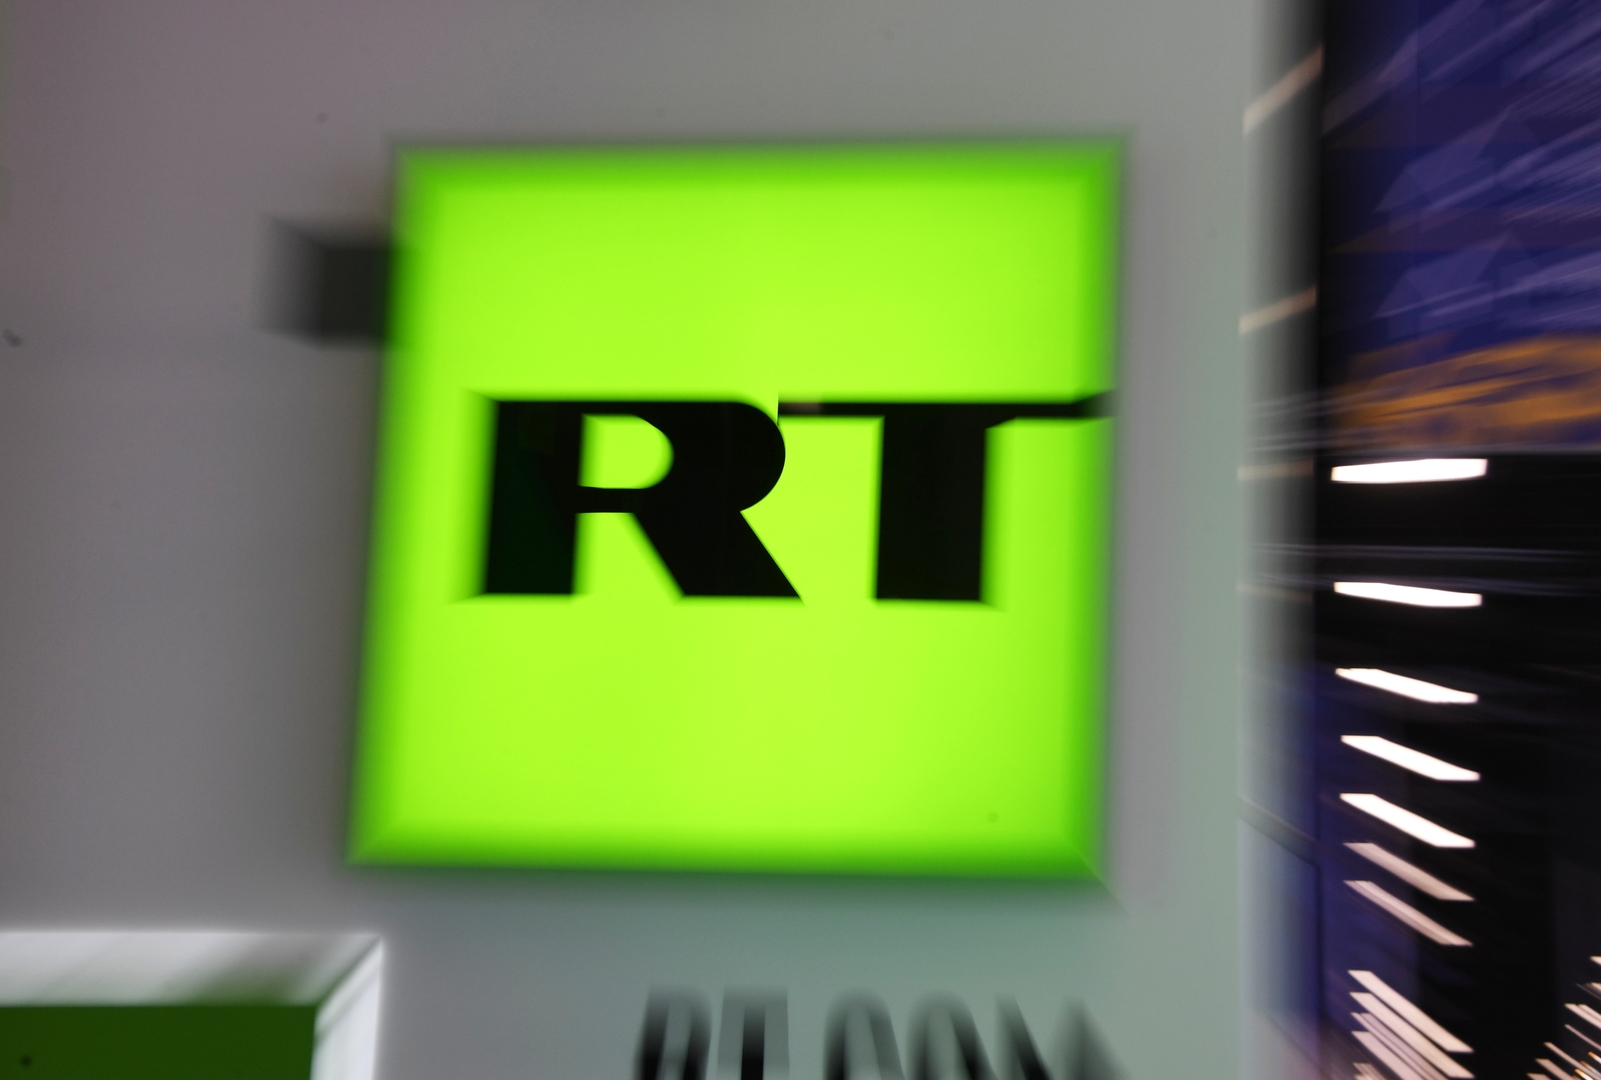 هيئة تنظيم الاتصالات في بريطانيا تسحب رخصة شبكة RT التلفزيونية الروسية